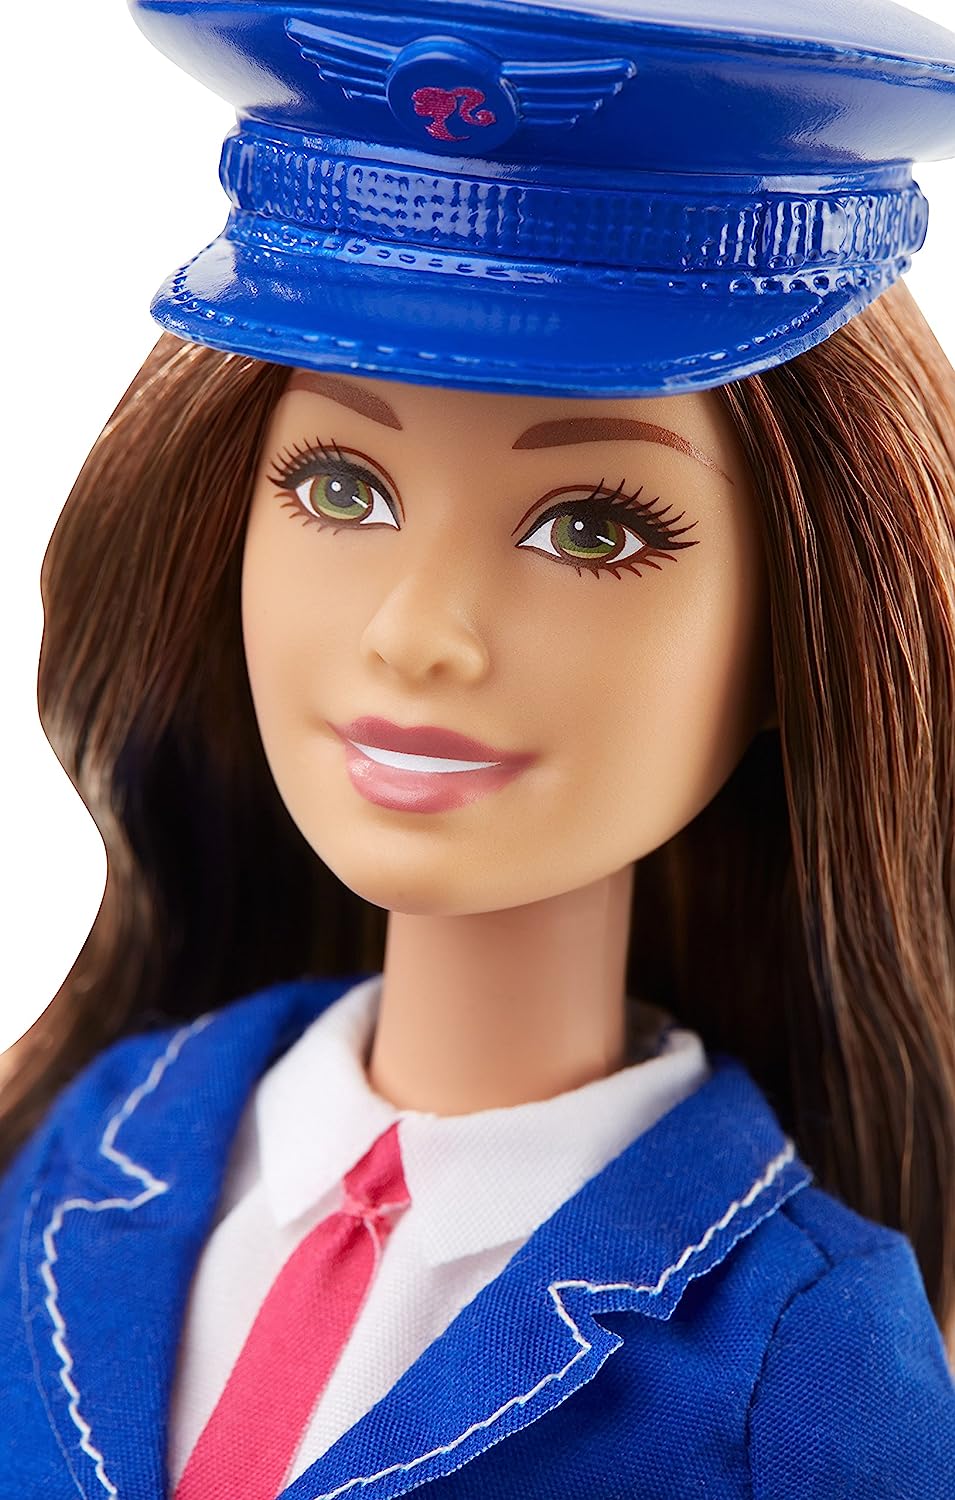 公式 バービー バービー人形 Dhb66 職業 バービーアイキャンビー バービーキャリア バービー人形 Dollバービー Pilot Careers Barbie Dhb66 職業 バービーアイキャンビー バービーキャリア 着せ替え人形 Portal Ypj Gov My